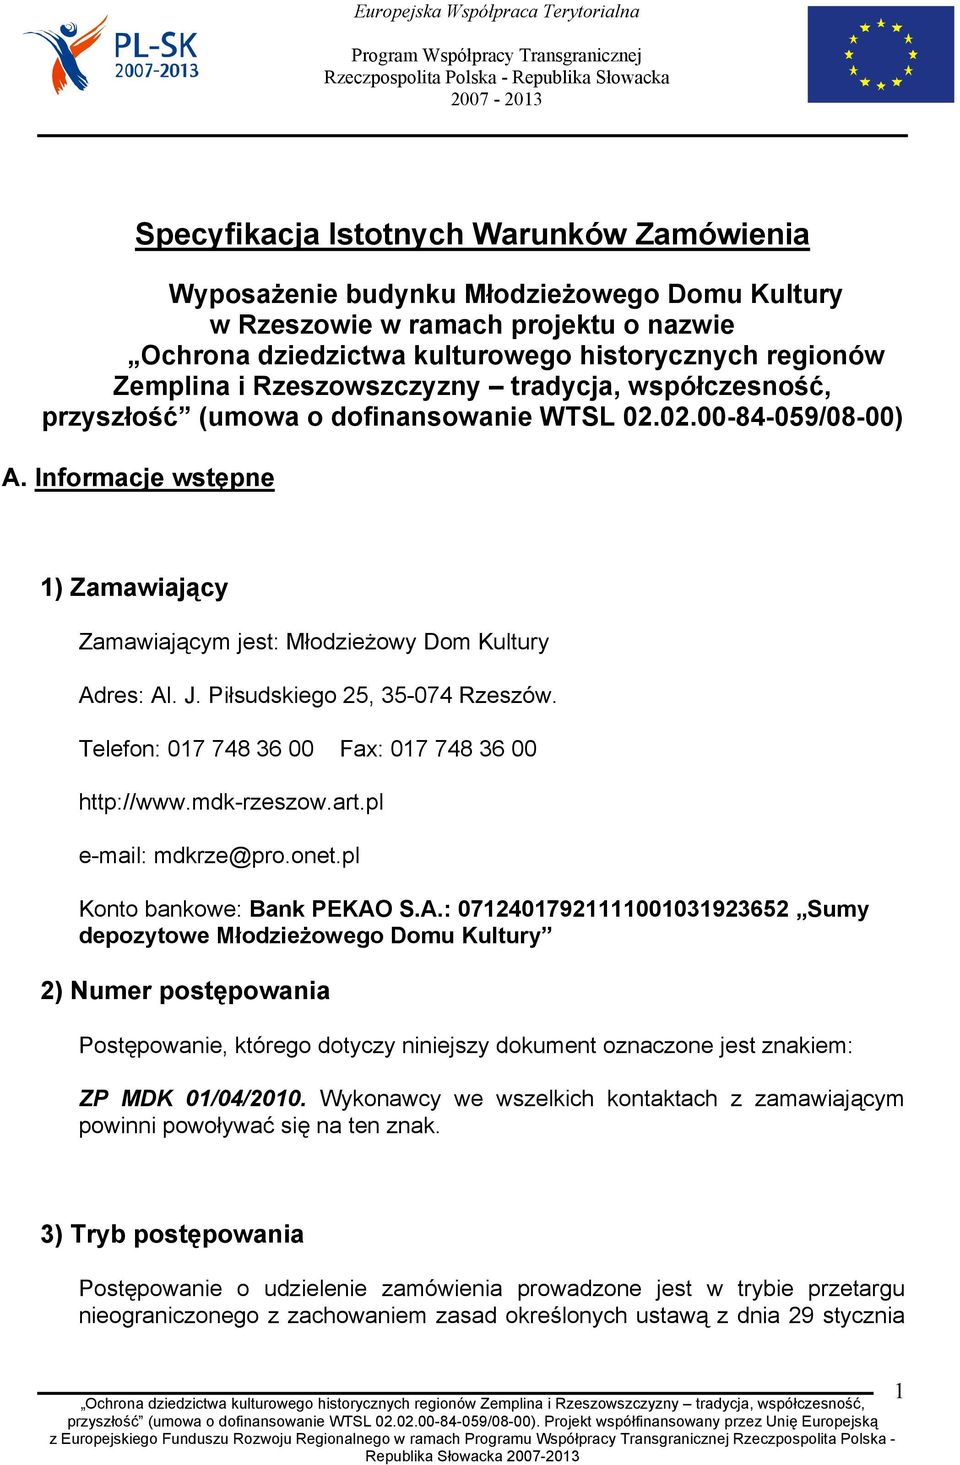 Piłsudskiego 25, 35-074 Rzeszów. Telefon: 017 748 36 00 Fax: 017 748 36 00 http://www.mdk-rzeszow.art.pl e-mail: mdkrze@pro.onet.pl Konto bankowe: Bank PEKAO